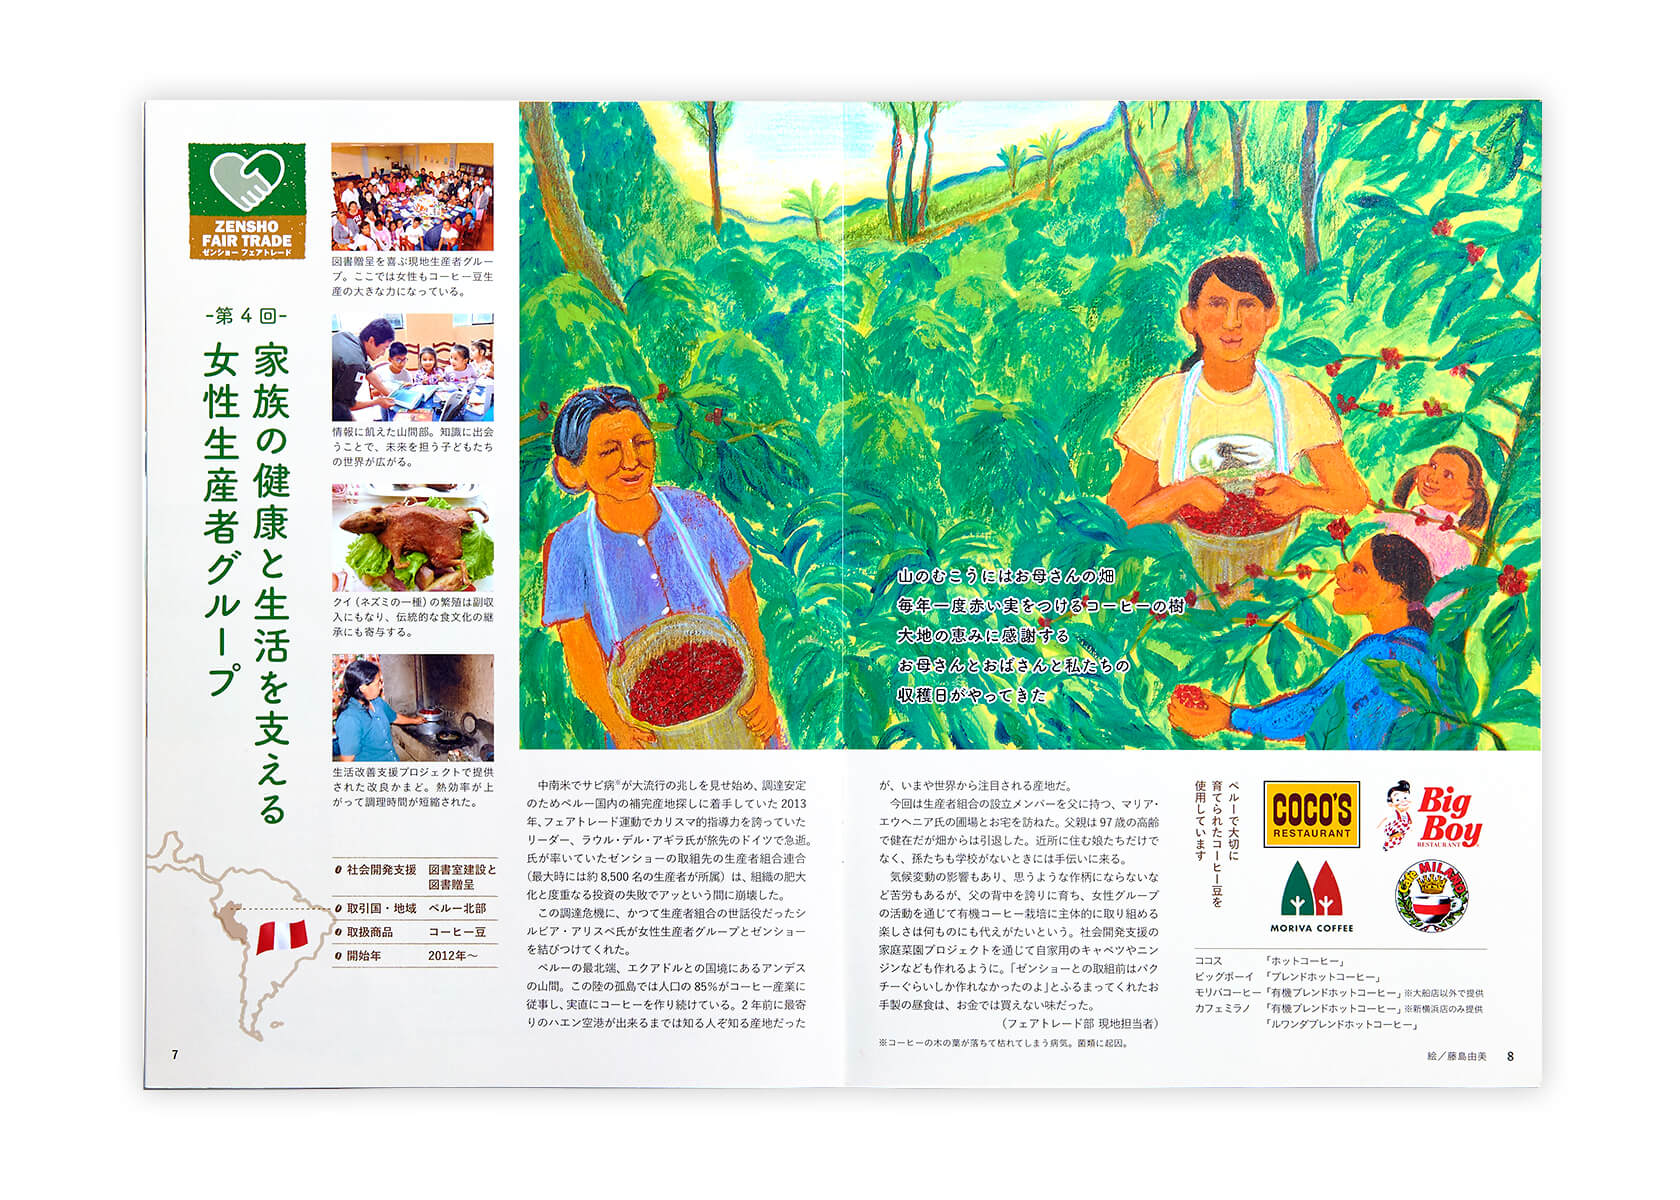 画像（6枚中6枚目）：定常企画「ZENSHO FAIR TRADE」Vol.24では、ペルー北部のコーヒー豆の女性生産者グループとのエピソードを紹介